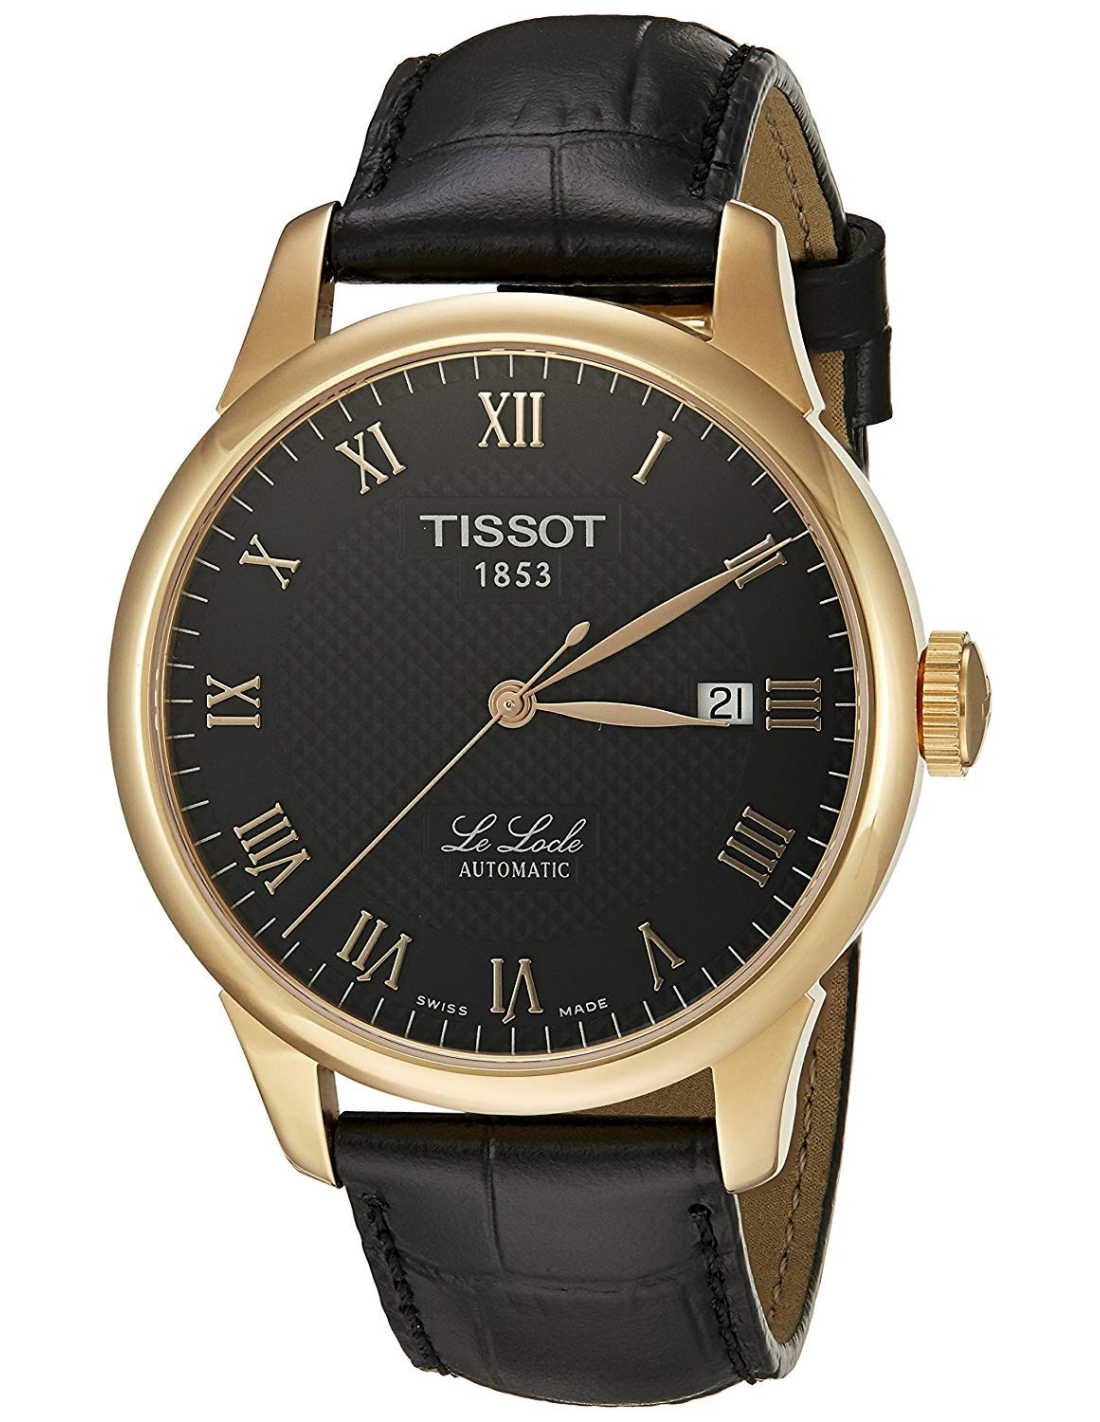 Tissot 1853 le Locle Automatic. Часы Tissot le Locle Automatic. Часы тиссот le Locle Automatic мужские. Часы тиссот 1853 le Locle.